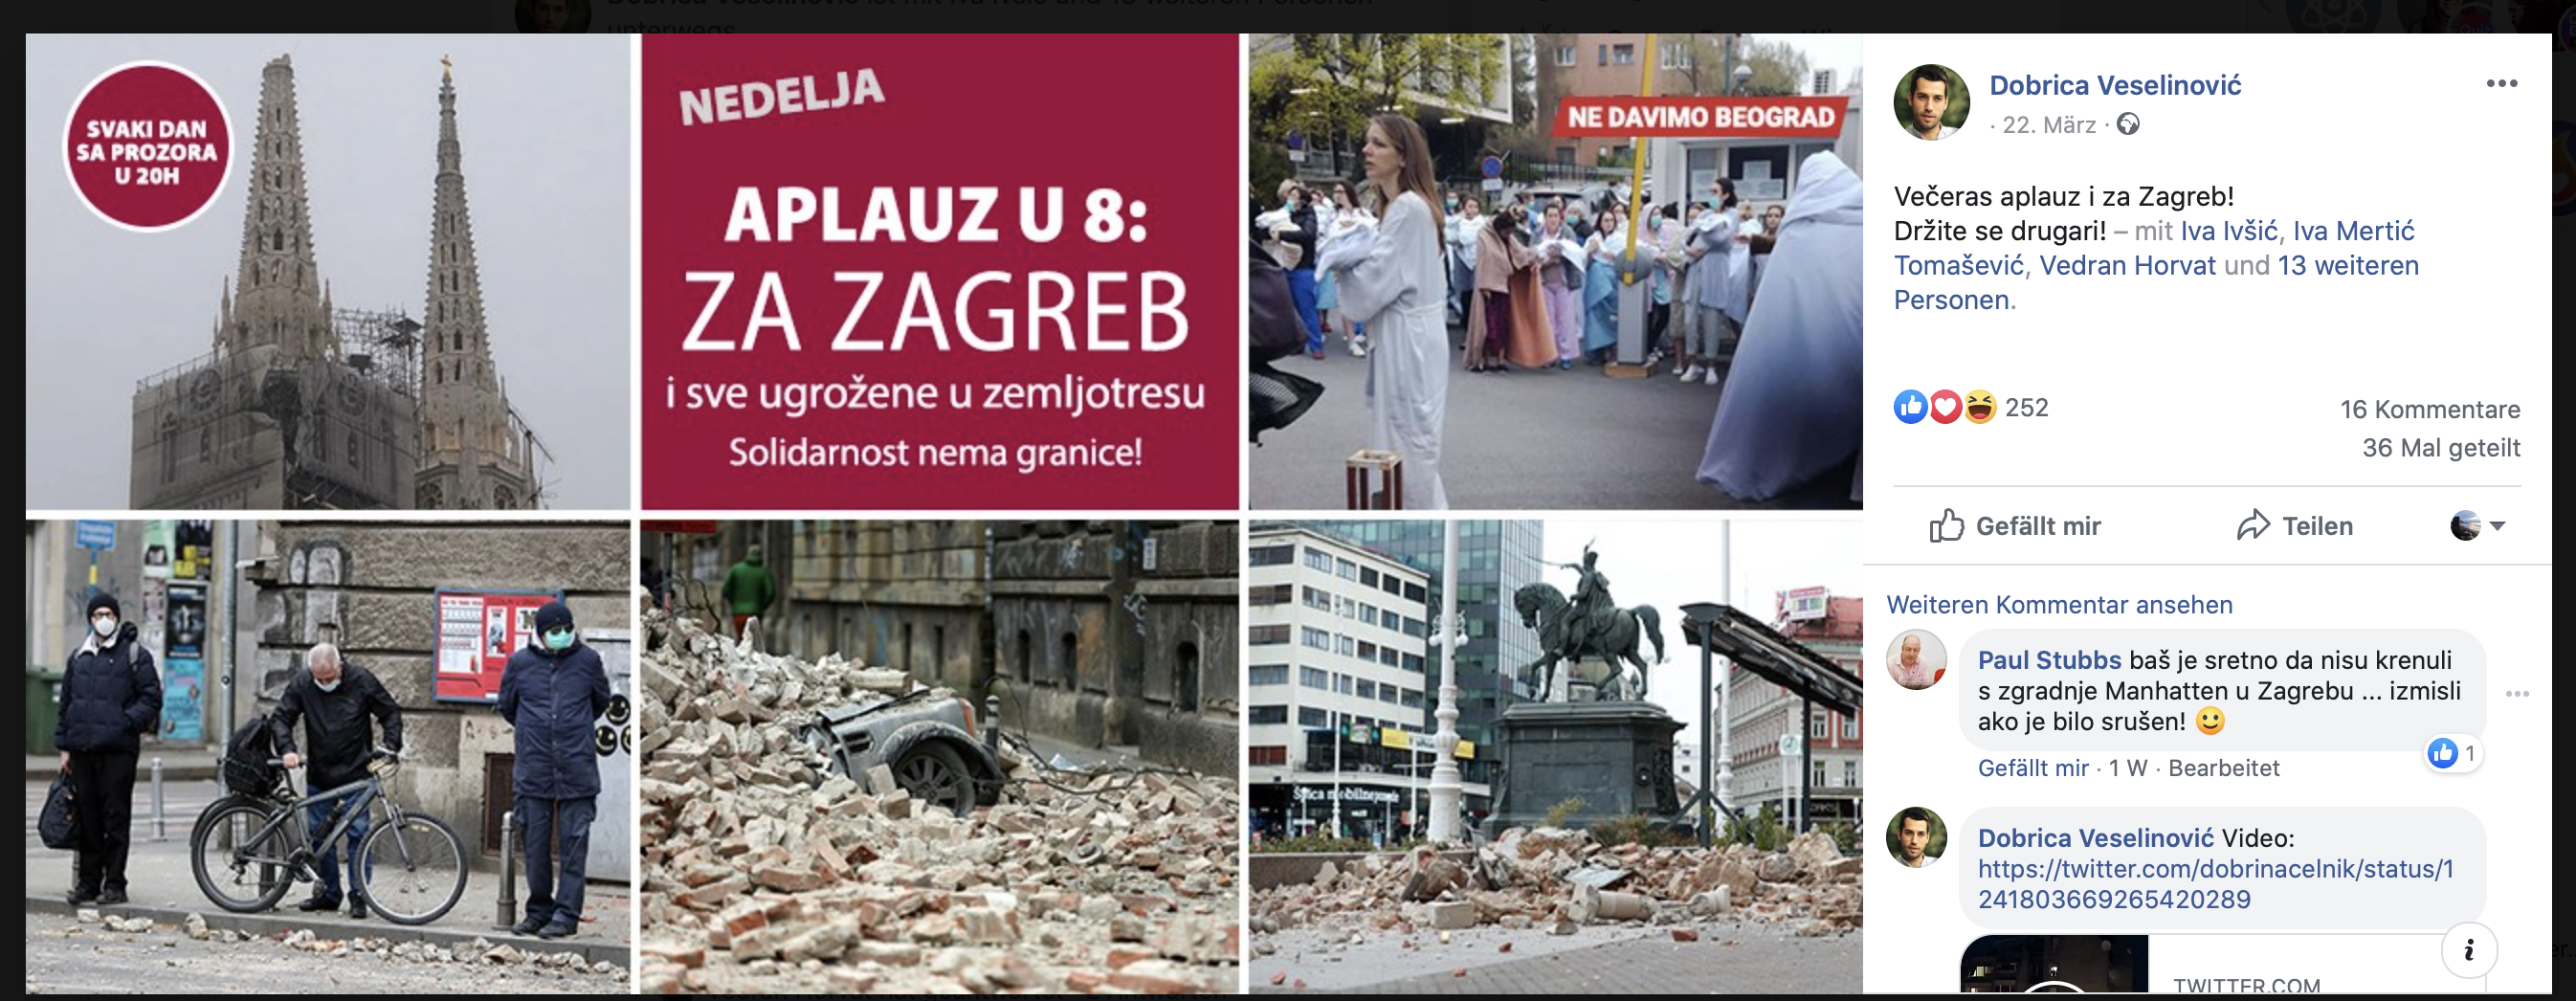 Aufruf zum Klatschen in Belgrad